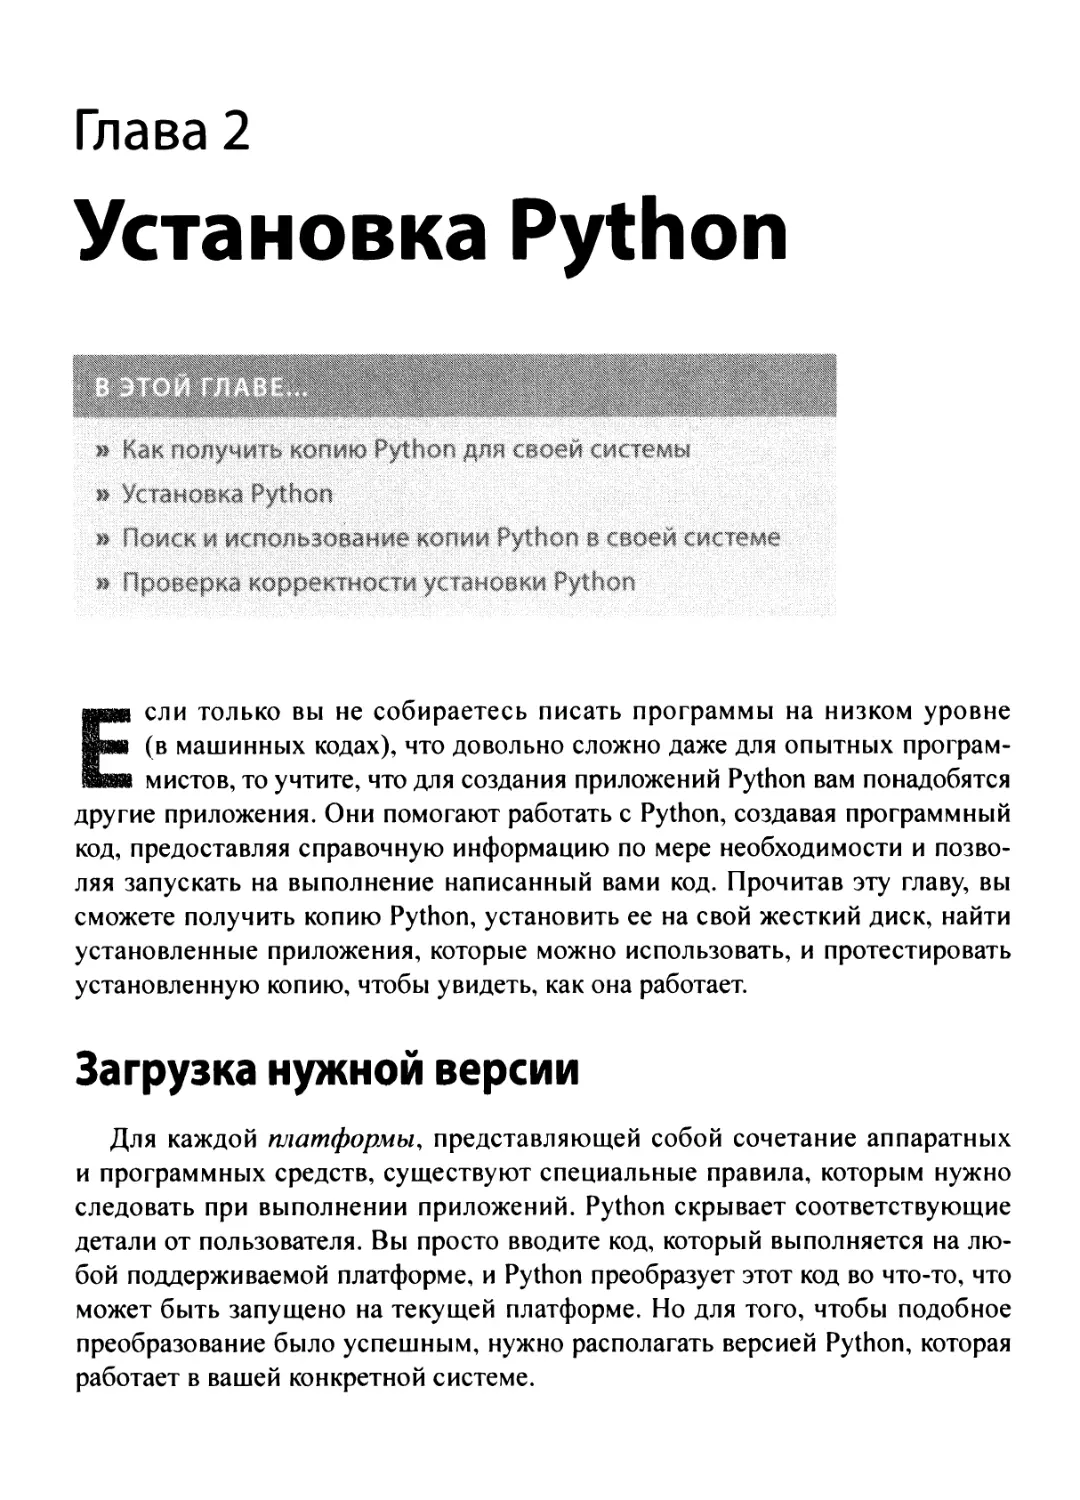 2. Установка Python